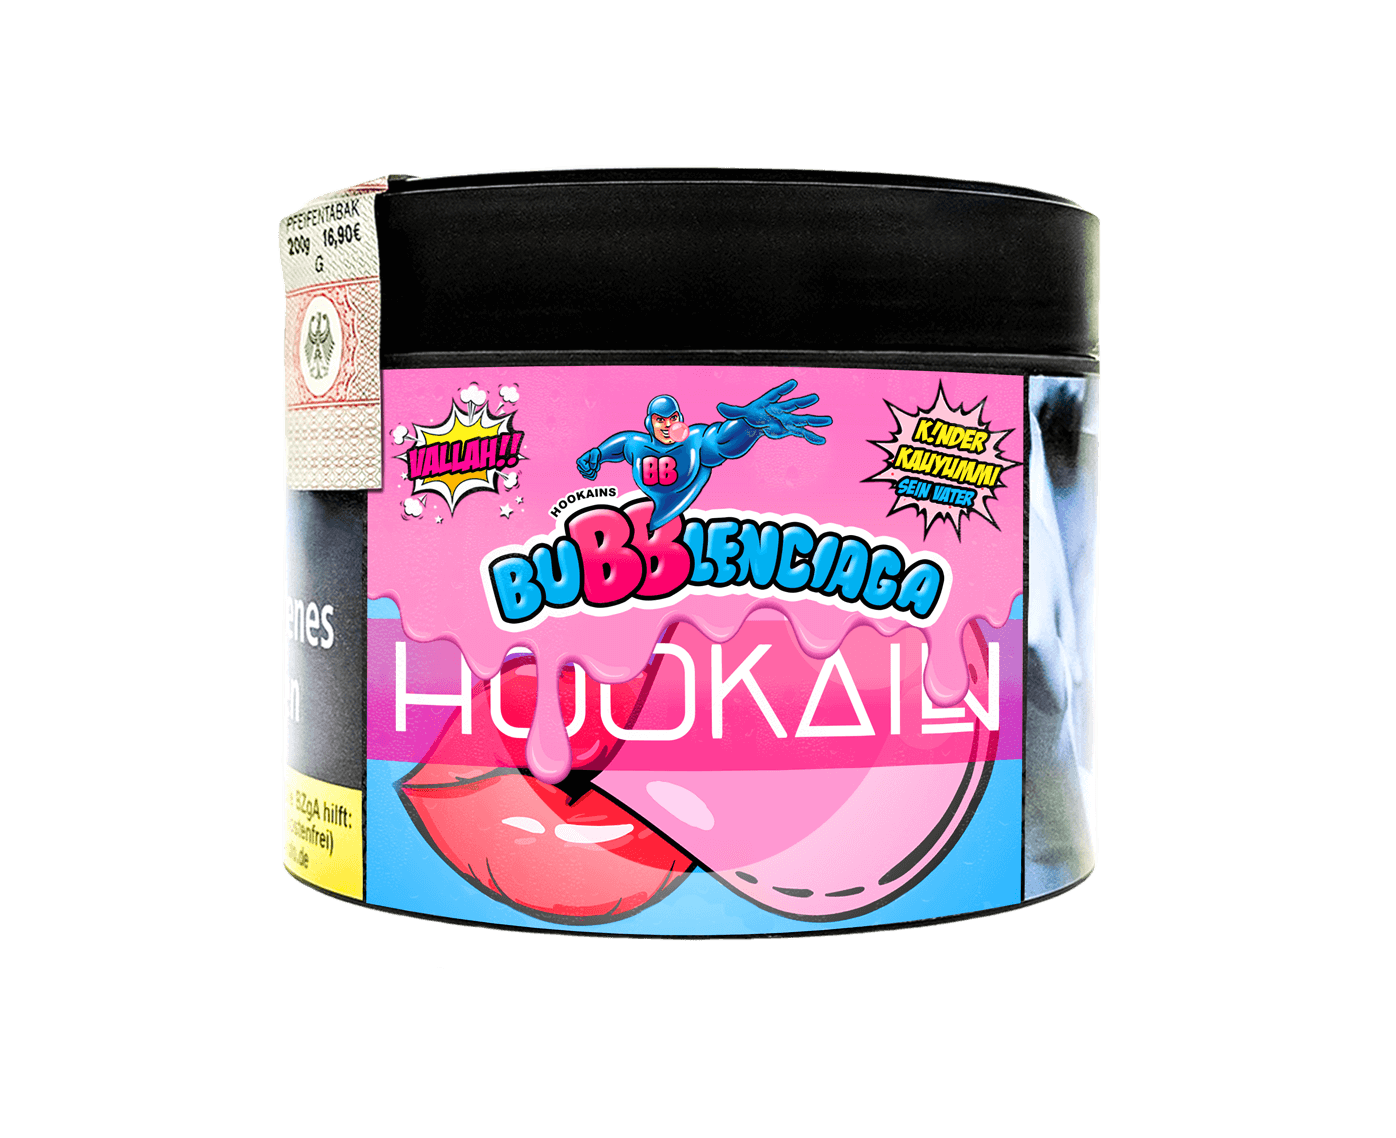 Hookain Bubblenciaga 200g